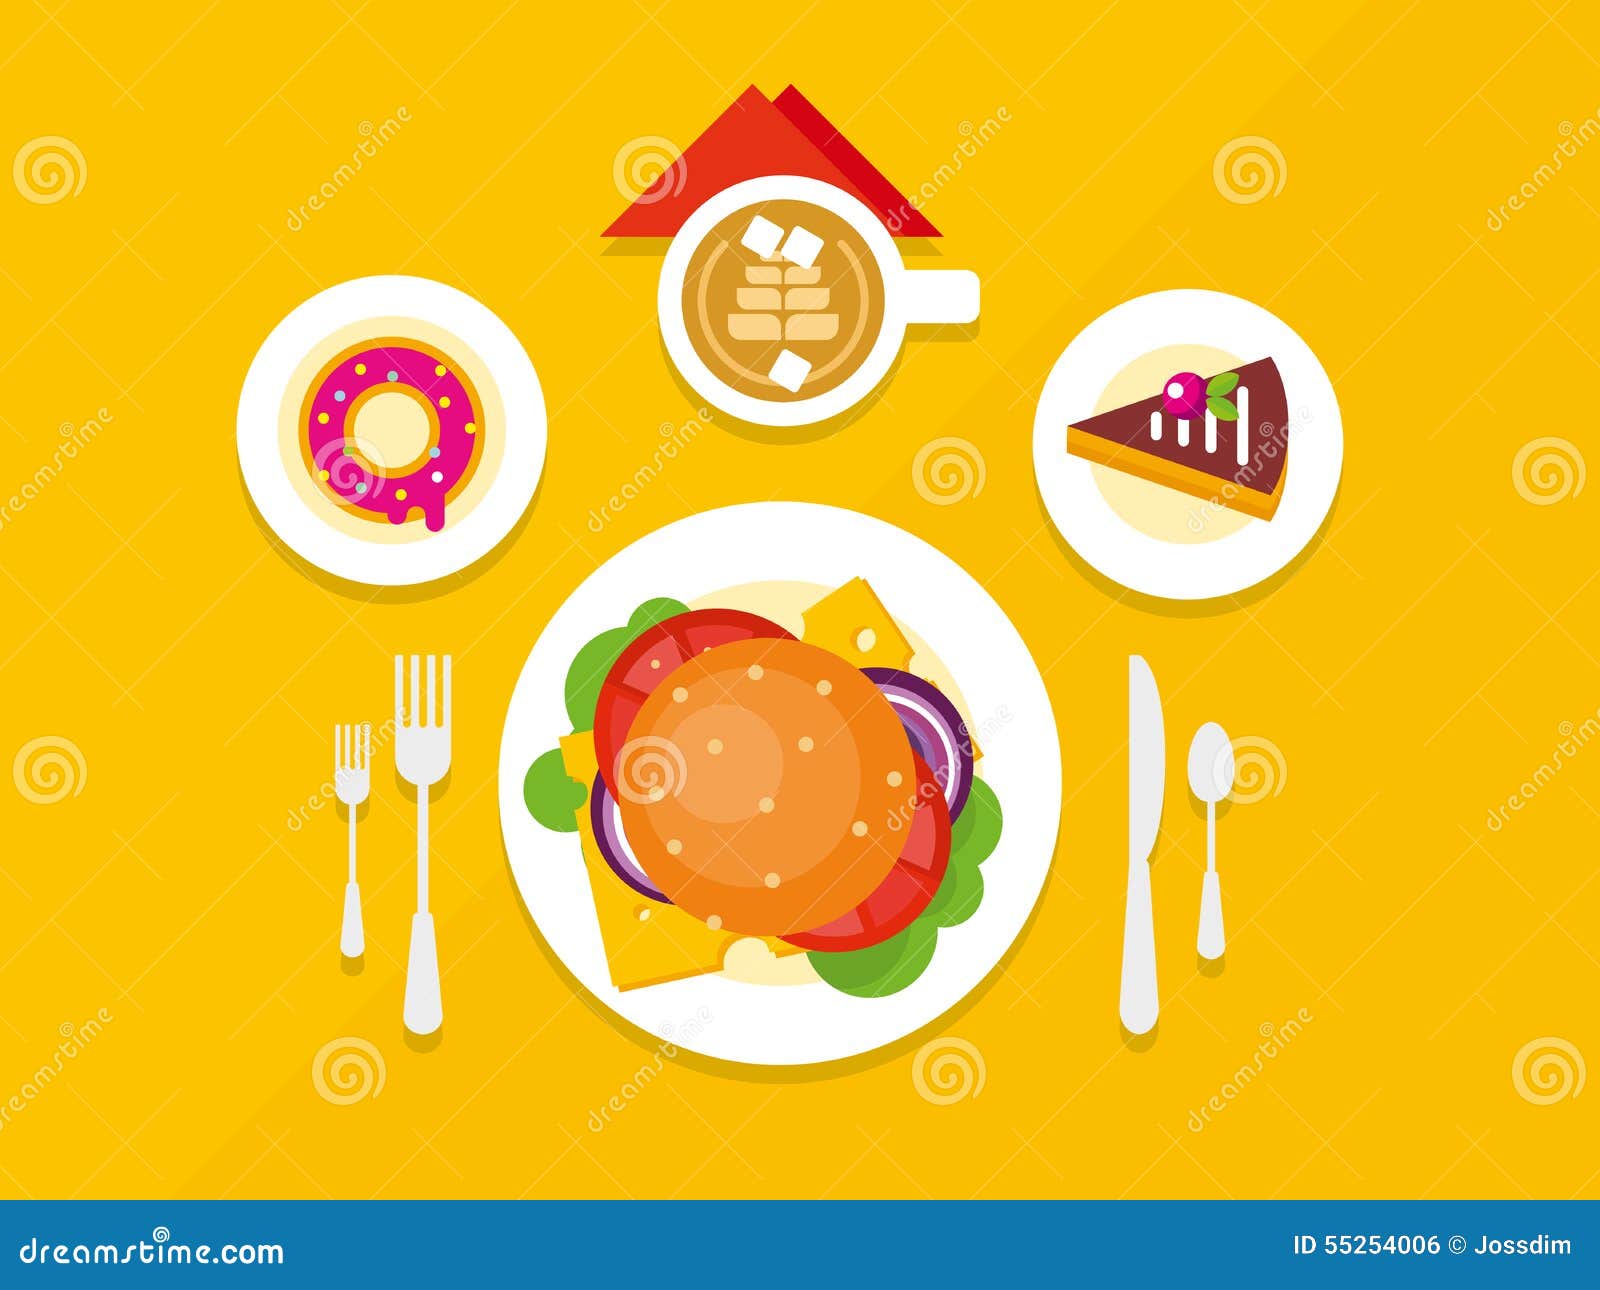 Flat food. Еда Flat Design. Векторные иллюстрации обед. Флэт иллюстрация еда. Еда в стиле флэт.